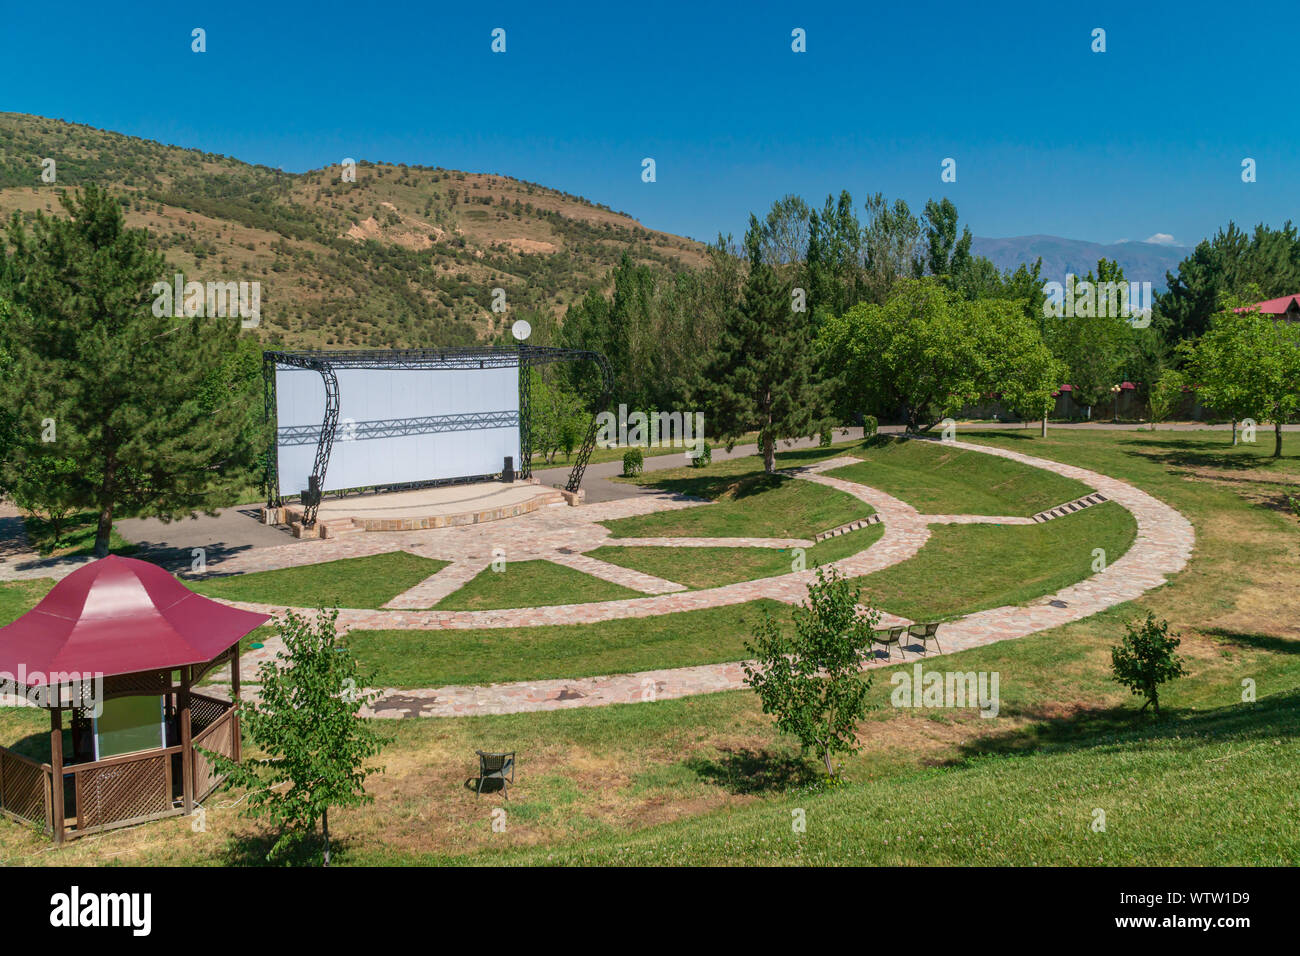 Cinéma de plein air en montagne, piscine cinéma théâtre Banque D'Images